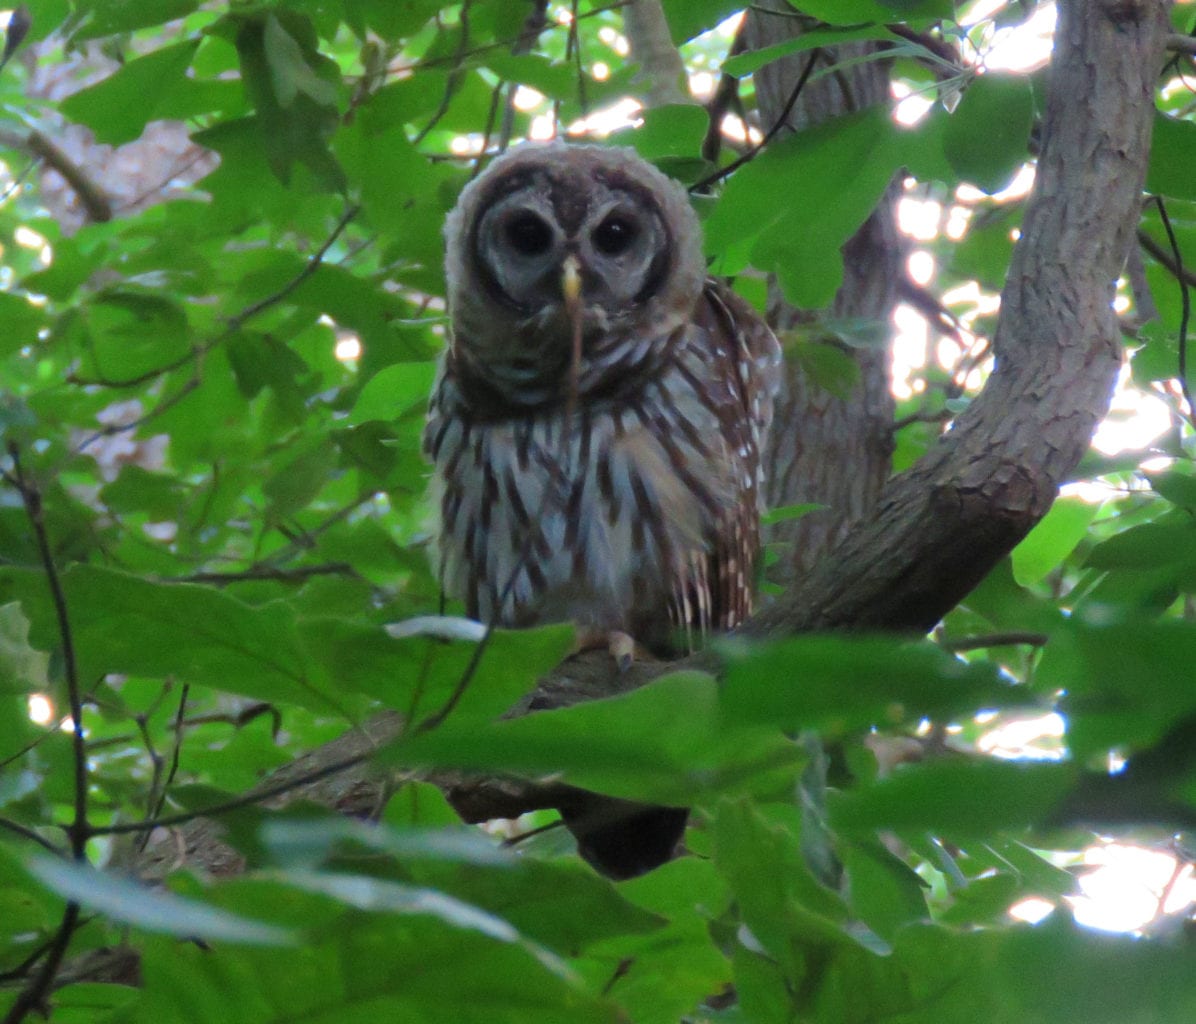 greenbelt owl1a 1196x1024 - An Update on Thoreau's Necessities of Life